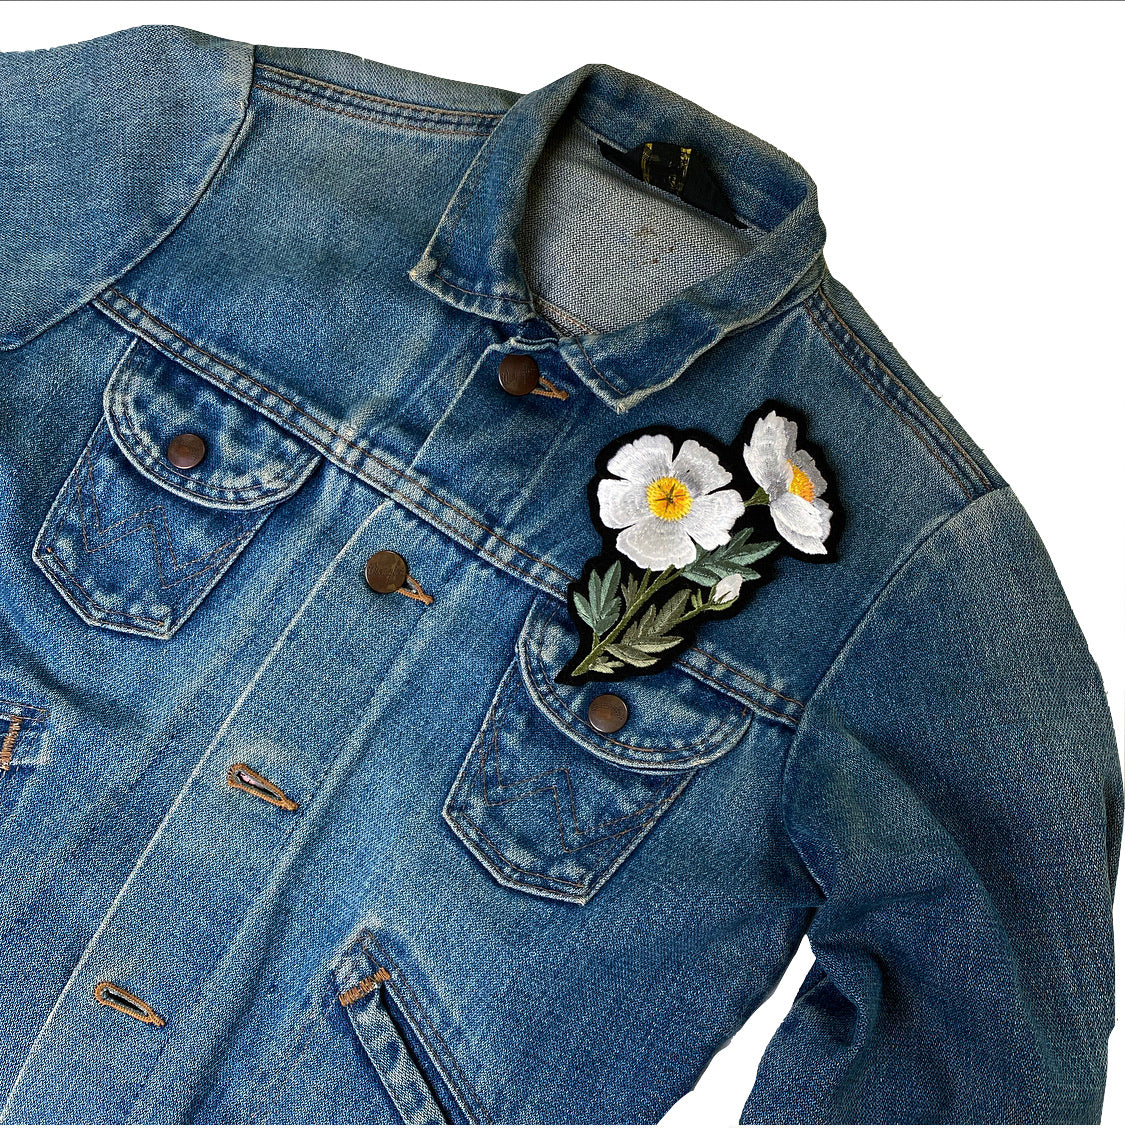 Fried egg flower embroidered patch on front shoulder of a denim jacket